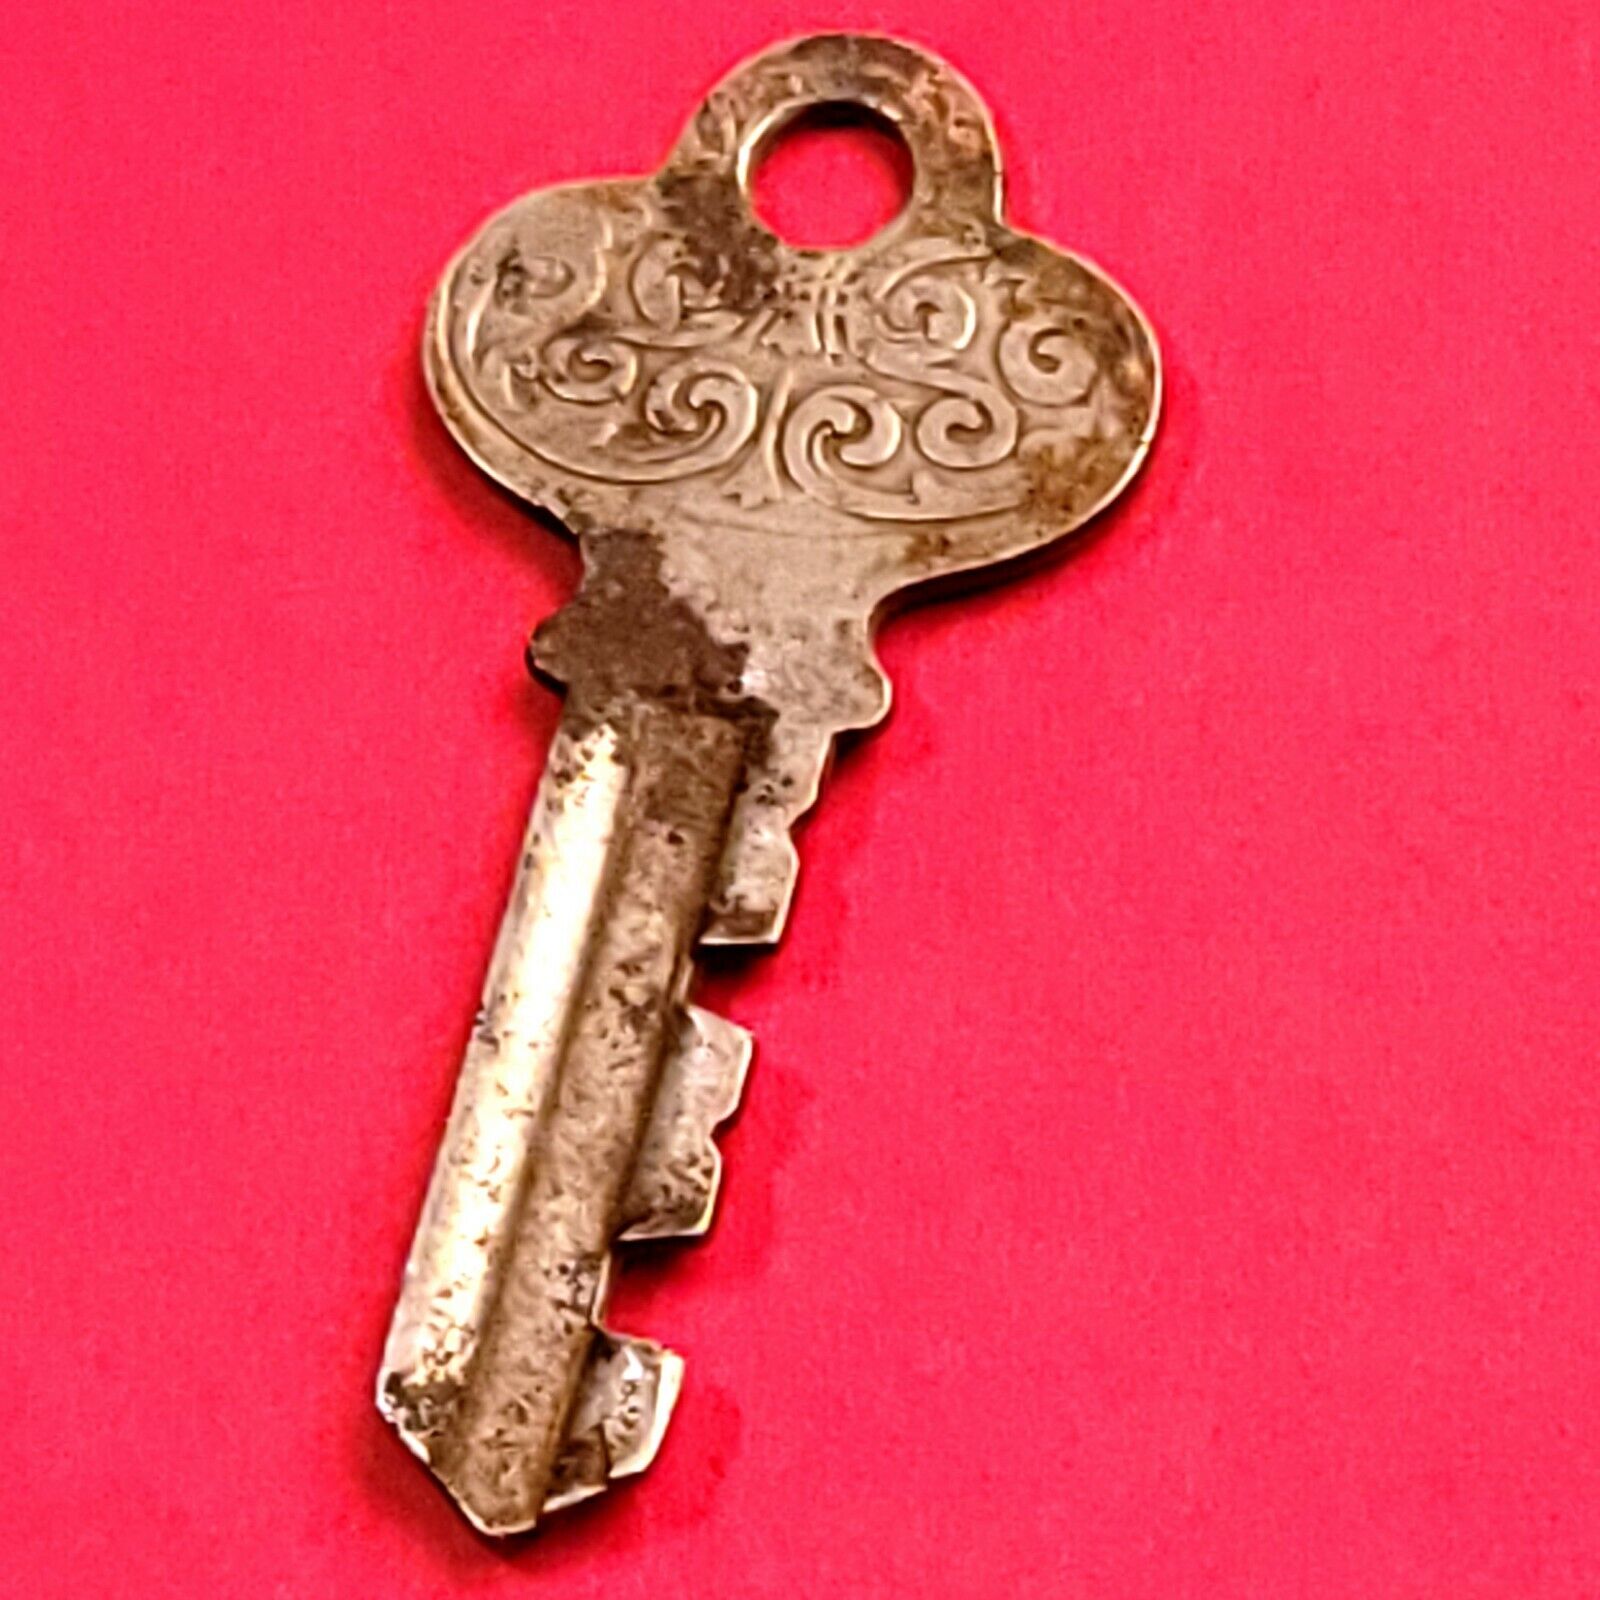 Vintge Fraim Key Ornate Decorative Old Key Steam-punk